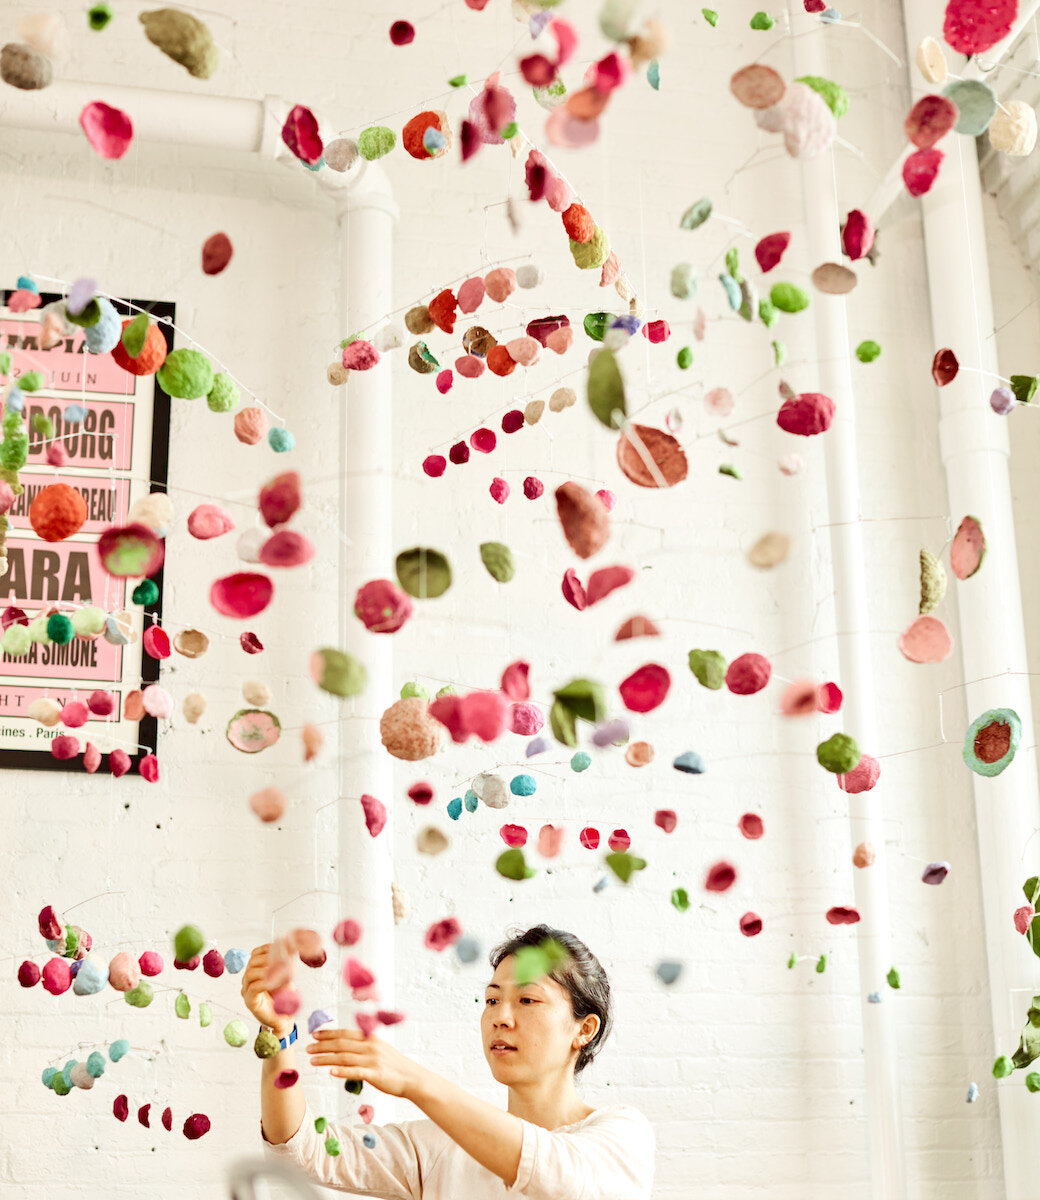 Beans, Pinecones, Umbrellas by Yuko Nishikawa 2